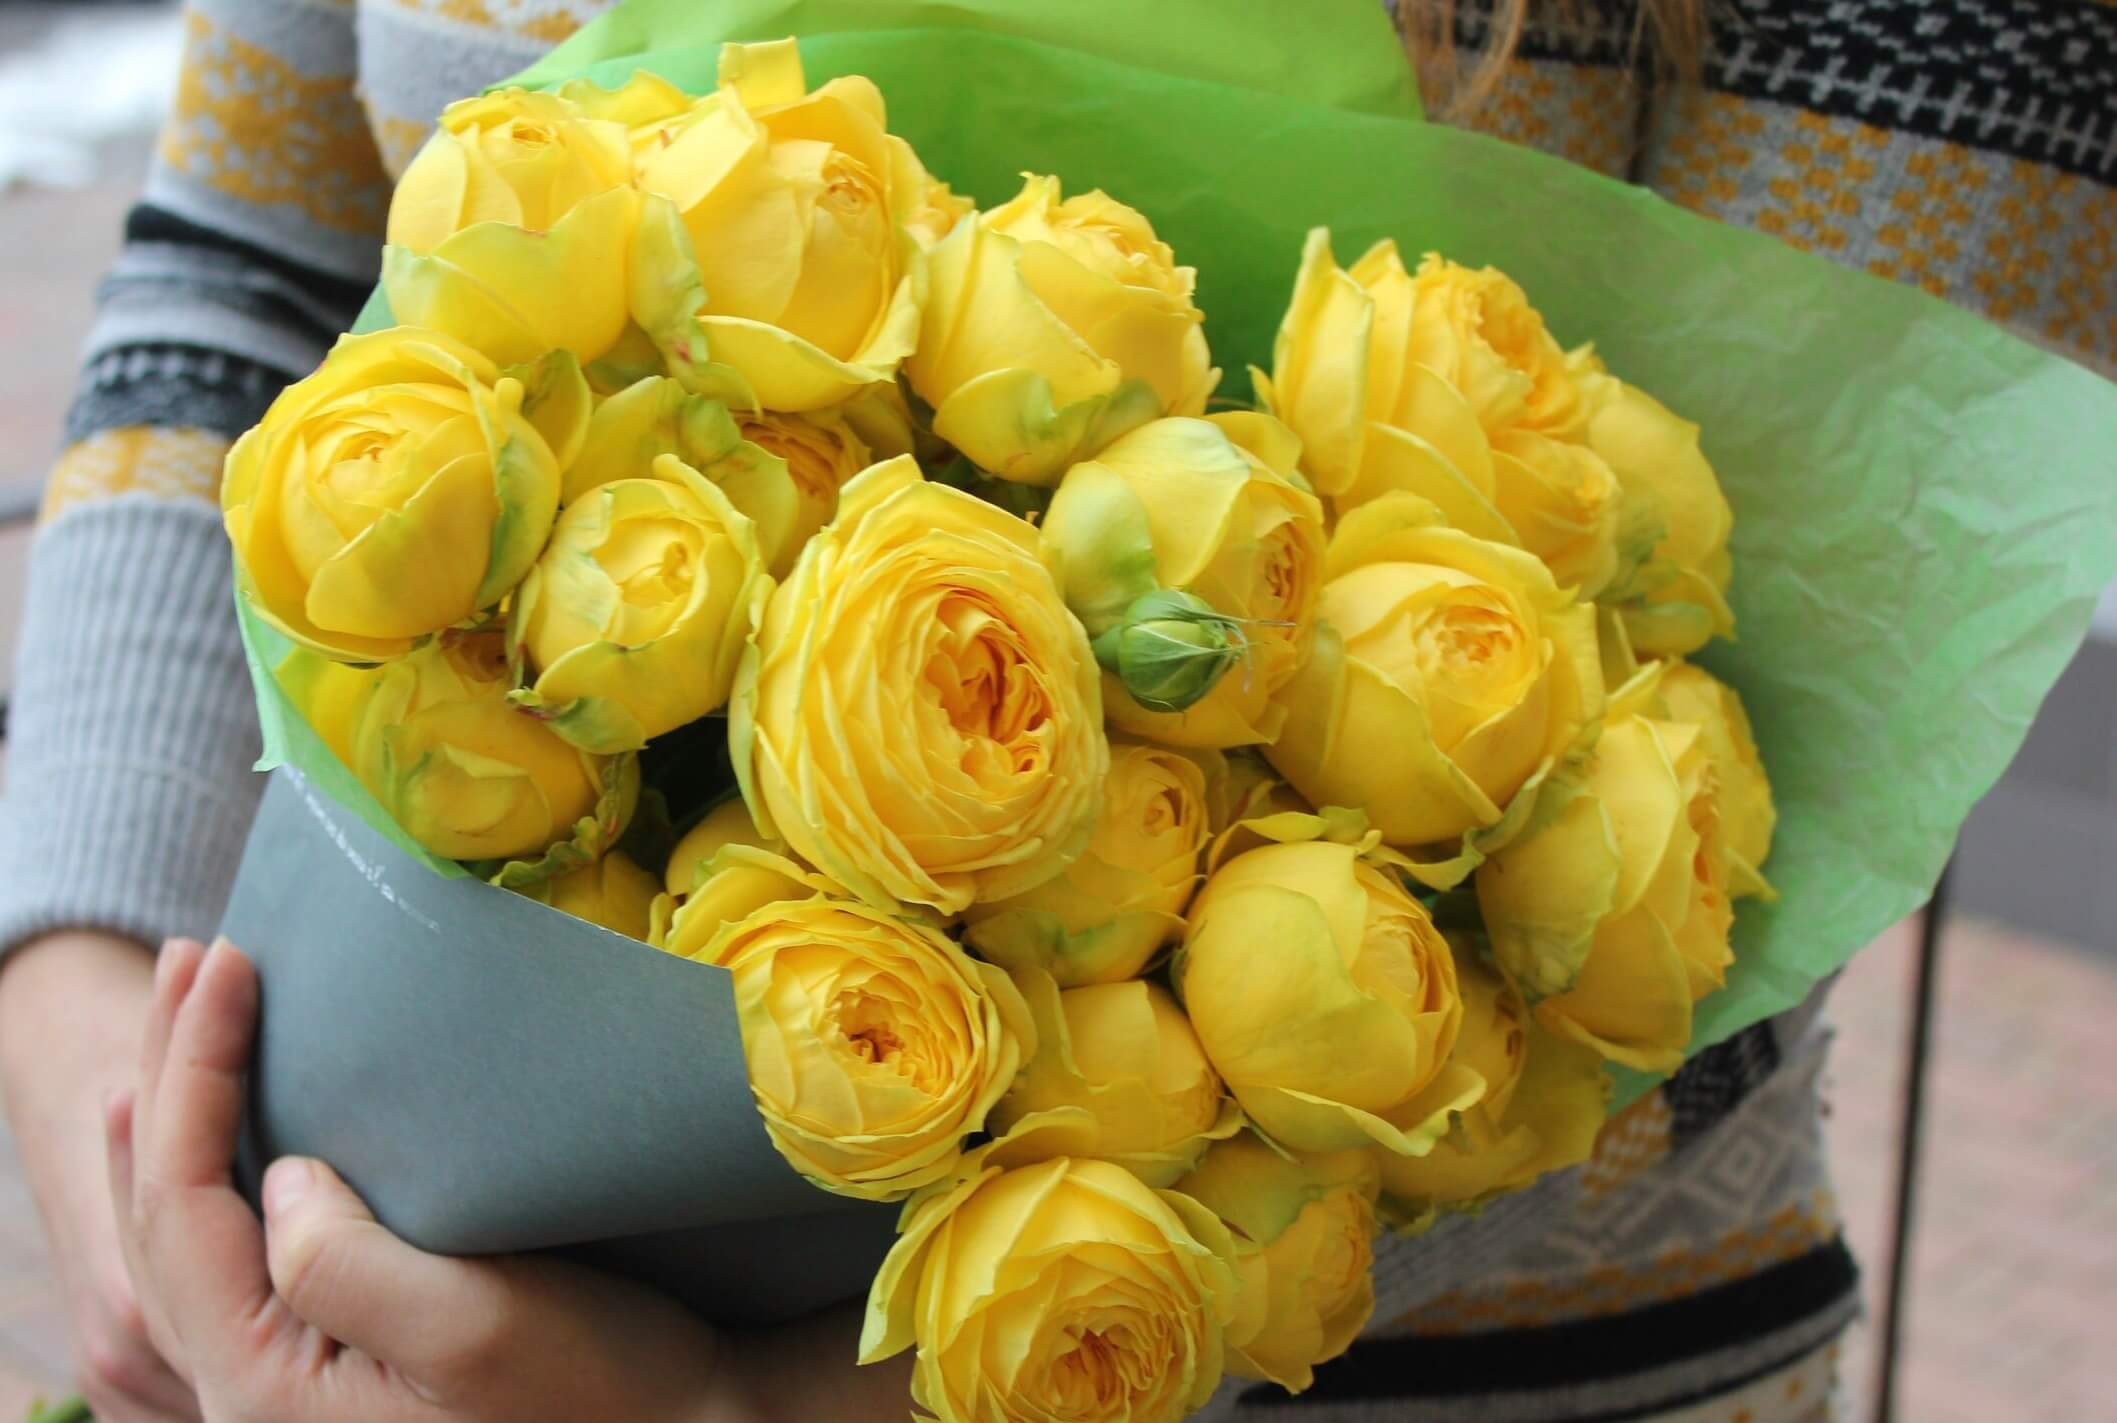 Katalina - сорт розы насыщенного лимонного оттенка, с высокой устойчивостью к заболеваниям